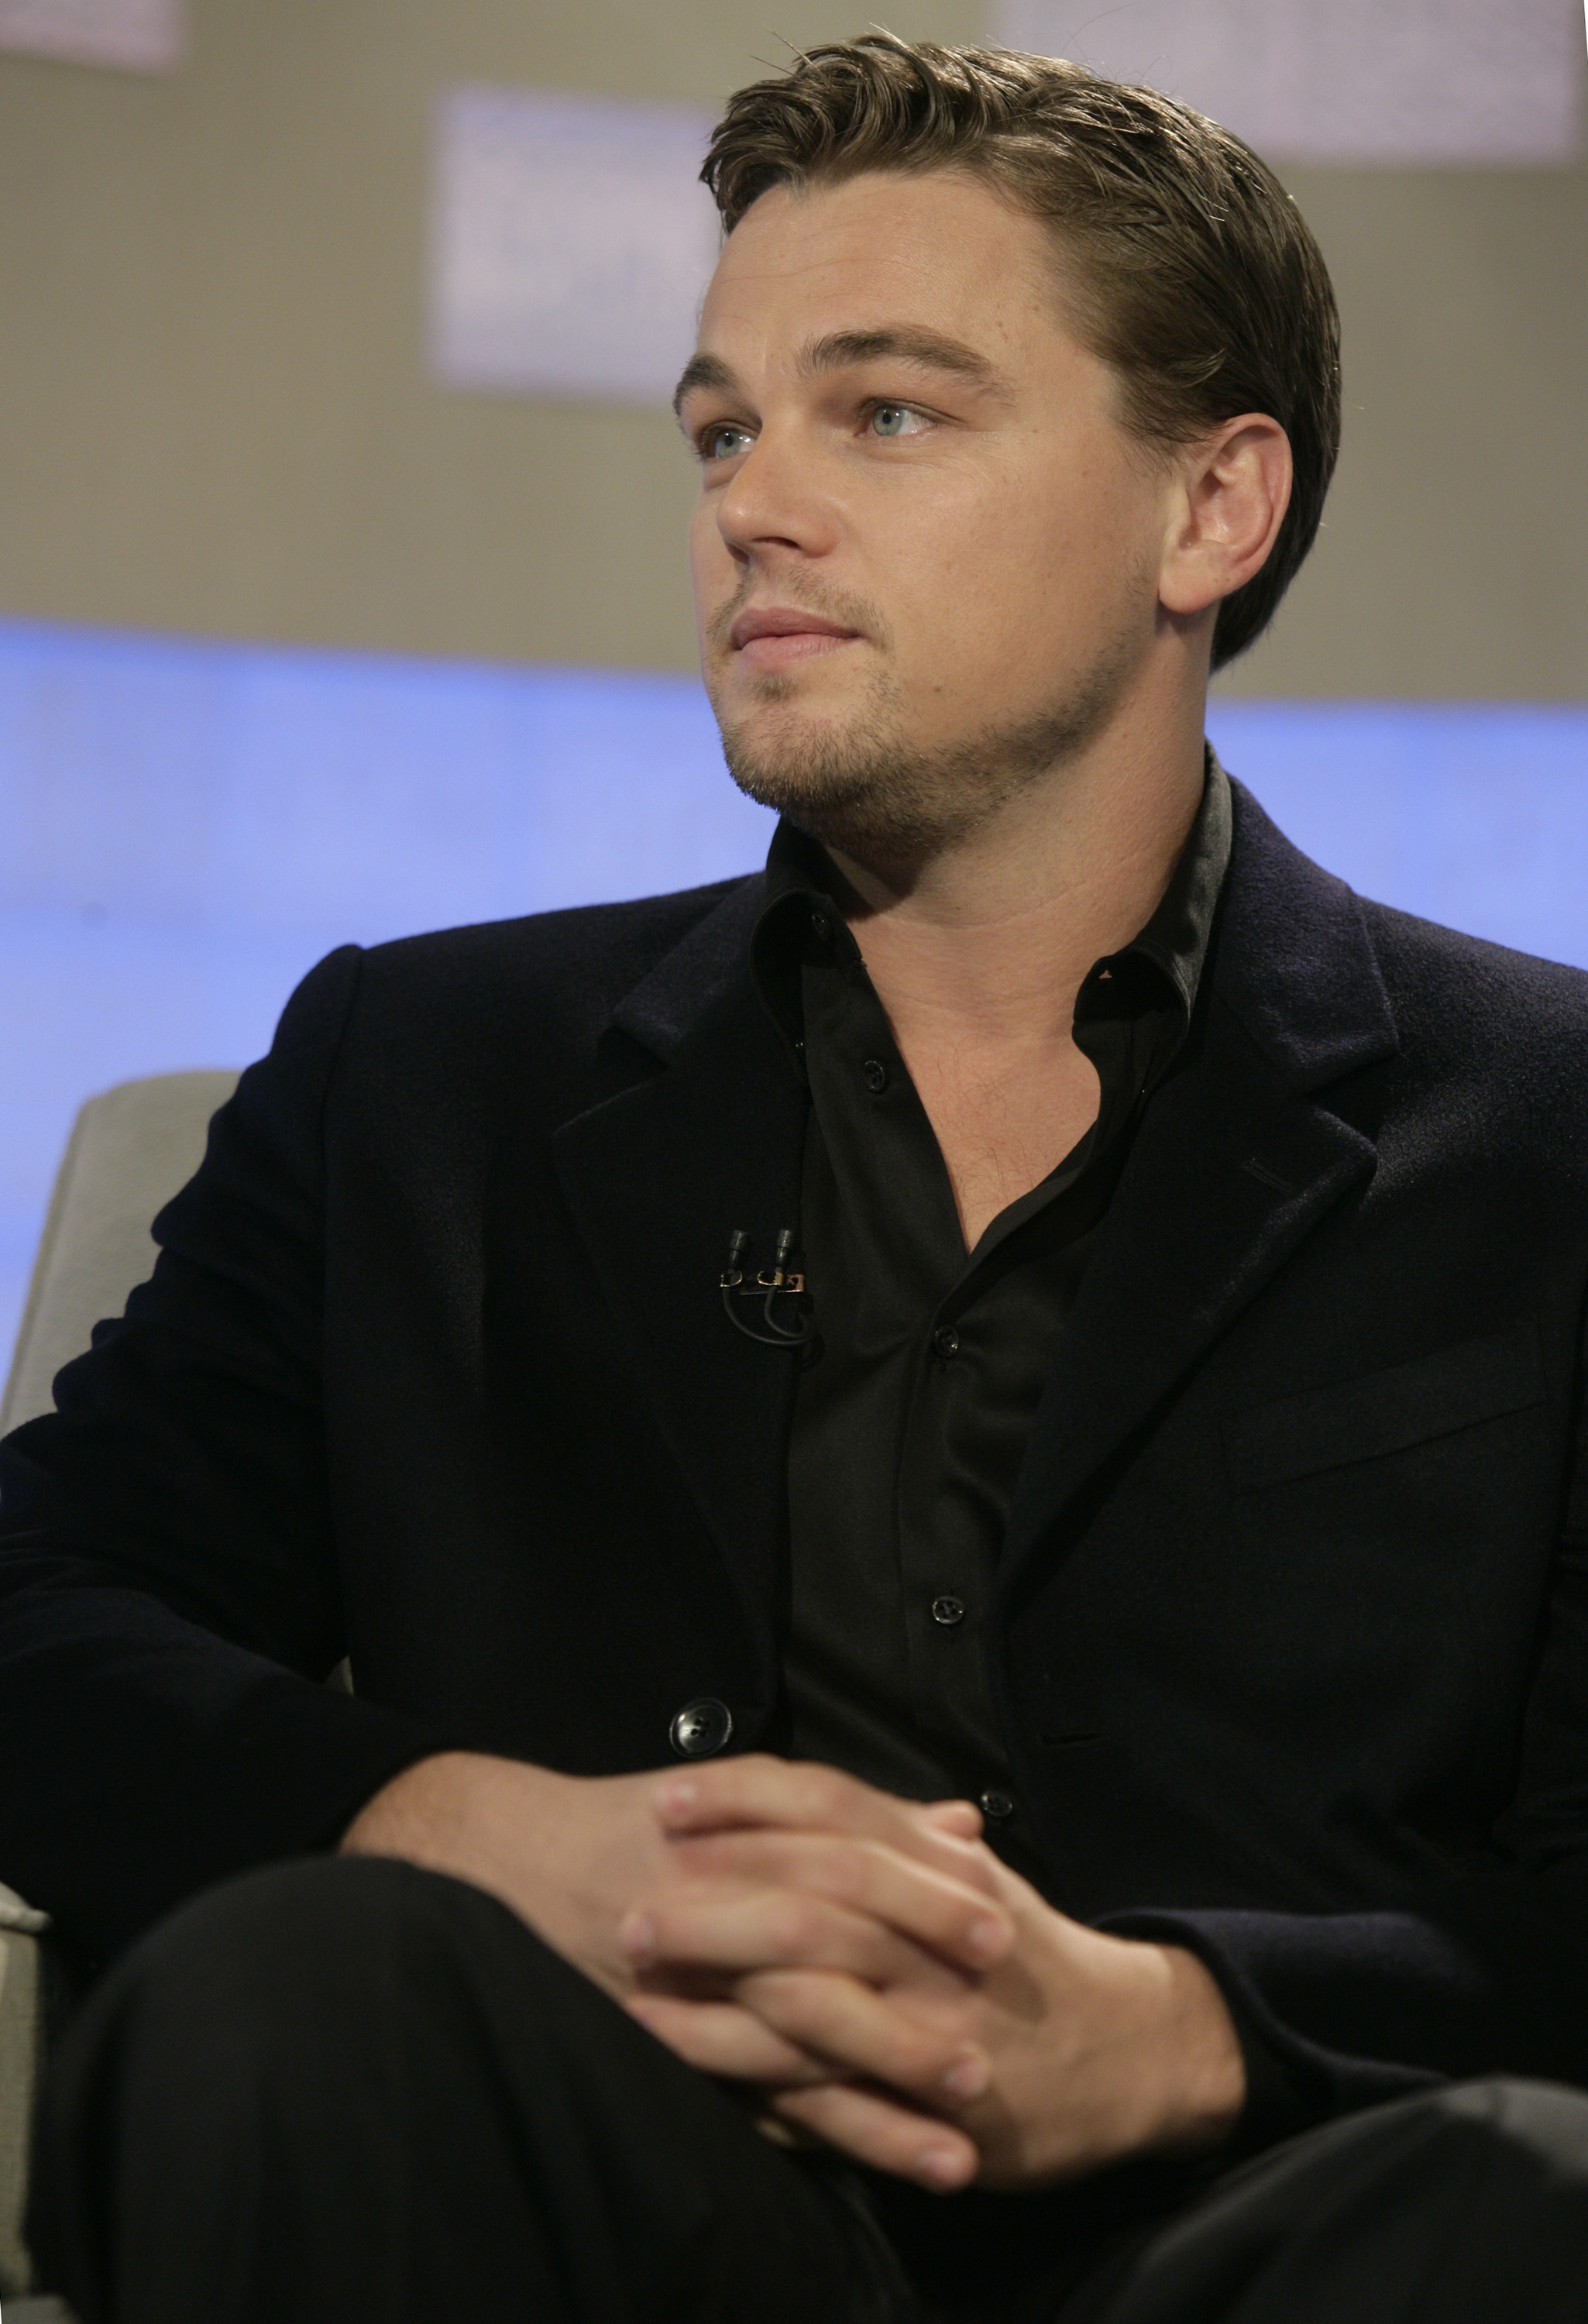 Leonardo DiCaprio lors d'une interview le 1er décembre 2006 | Source : Getty Images